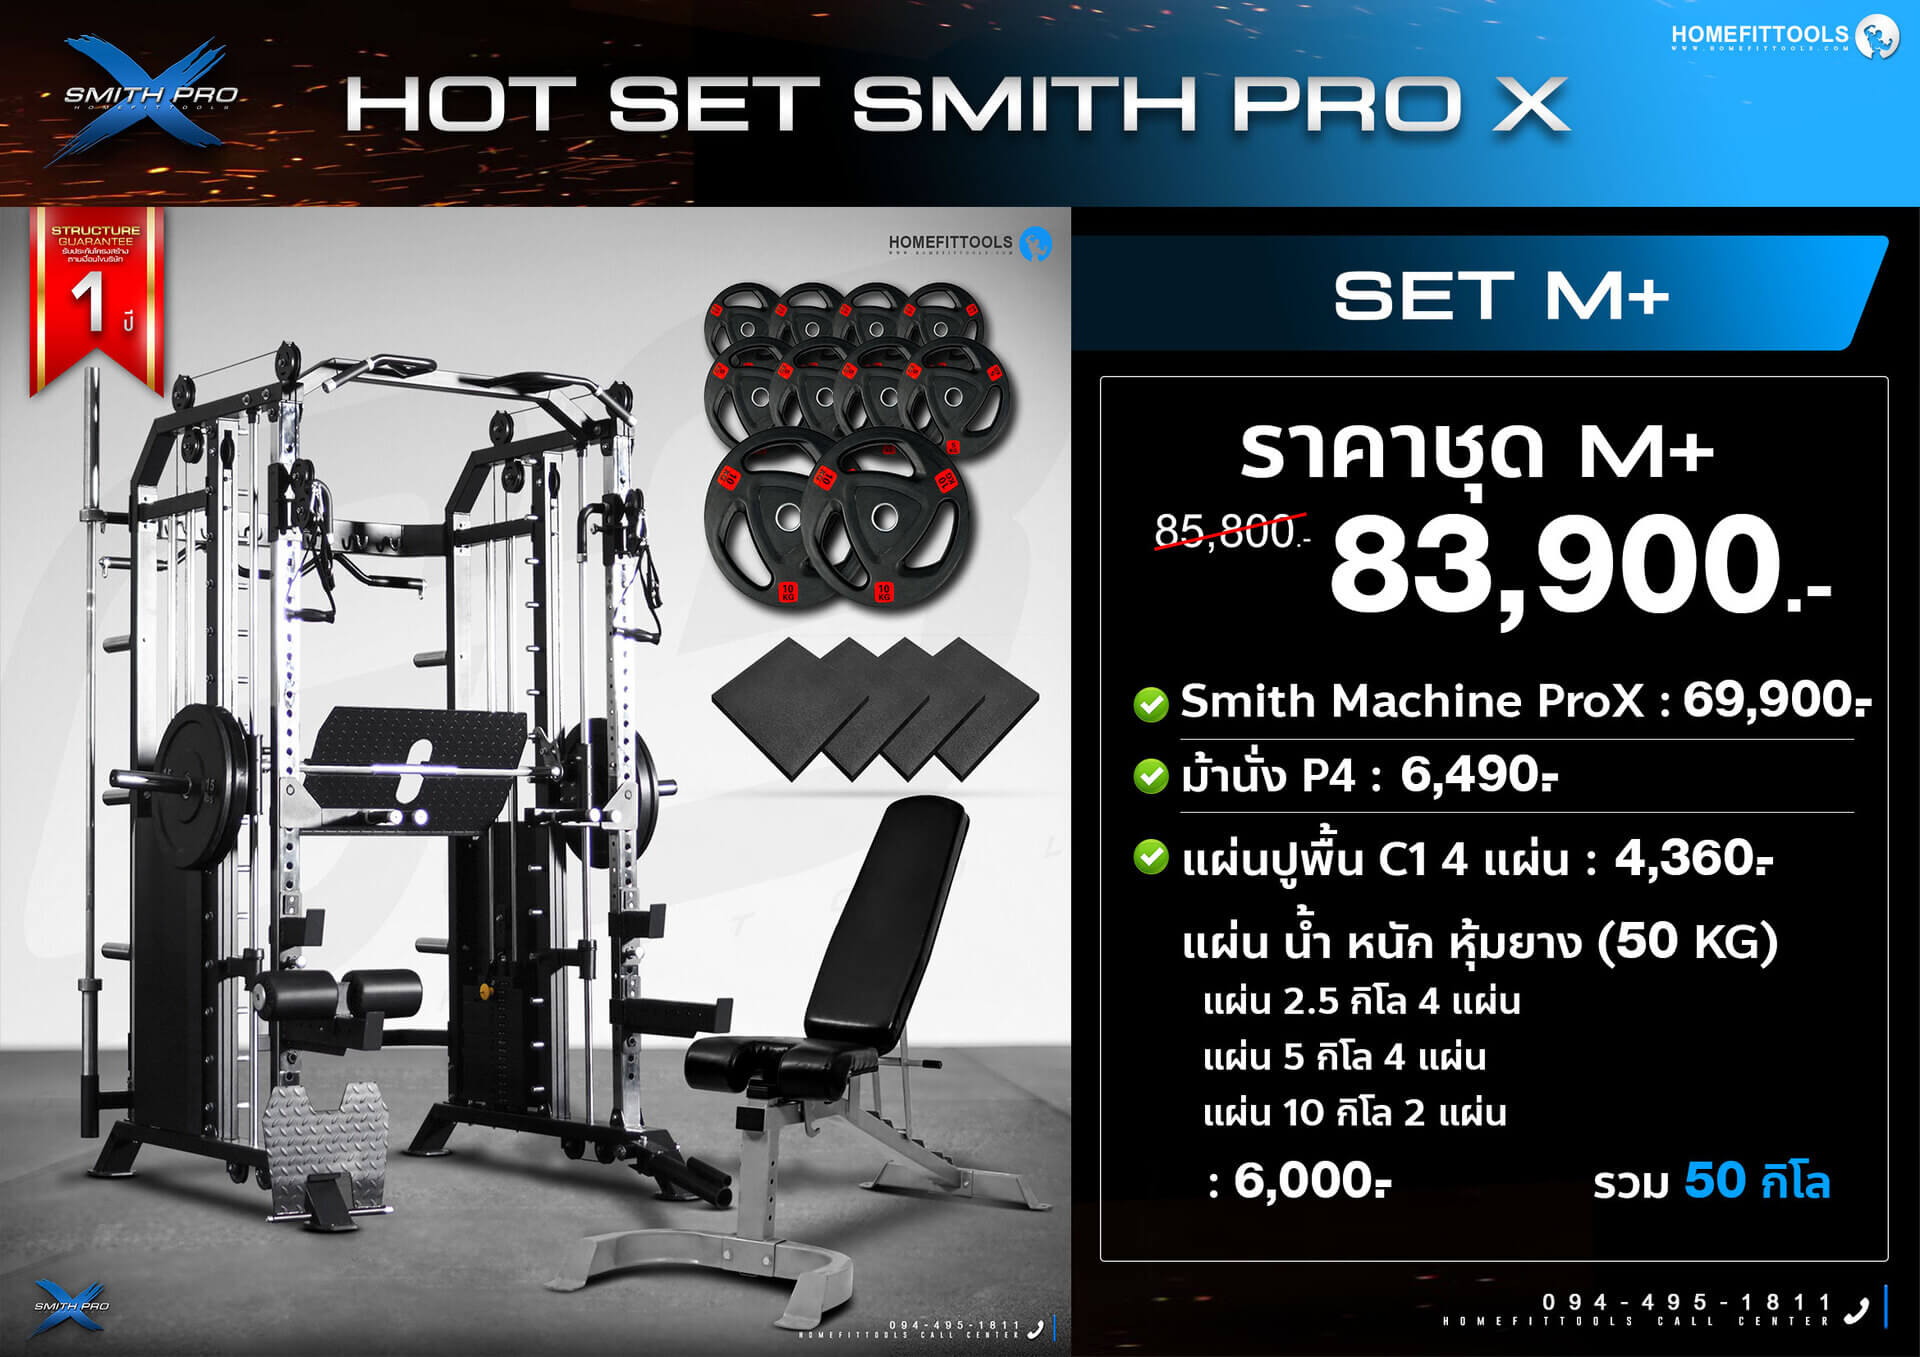 โปรโมชั่น Smith machine prox สมิทแมชชีน pro-x Home gym ชุดโฮมยิม ออกกำลังกาย เครื่องออกกำลังกาย อุปกรณ์ฟิตเนส